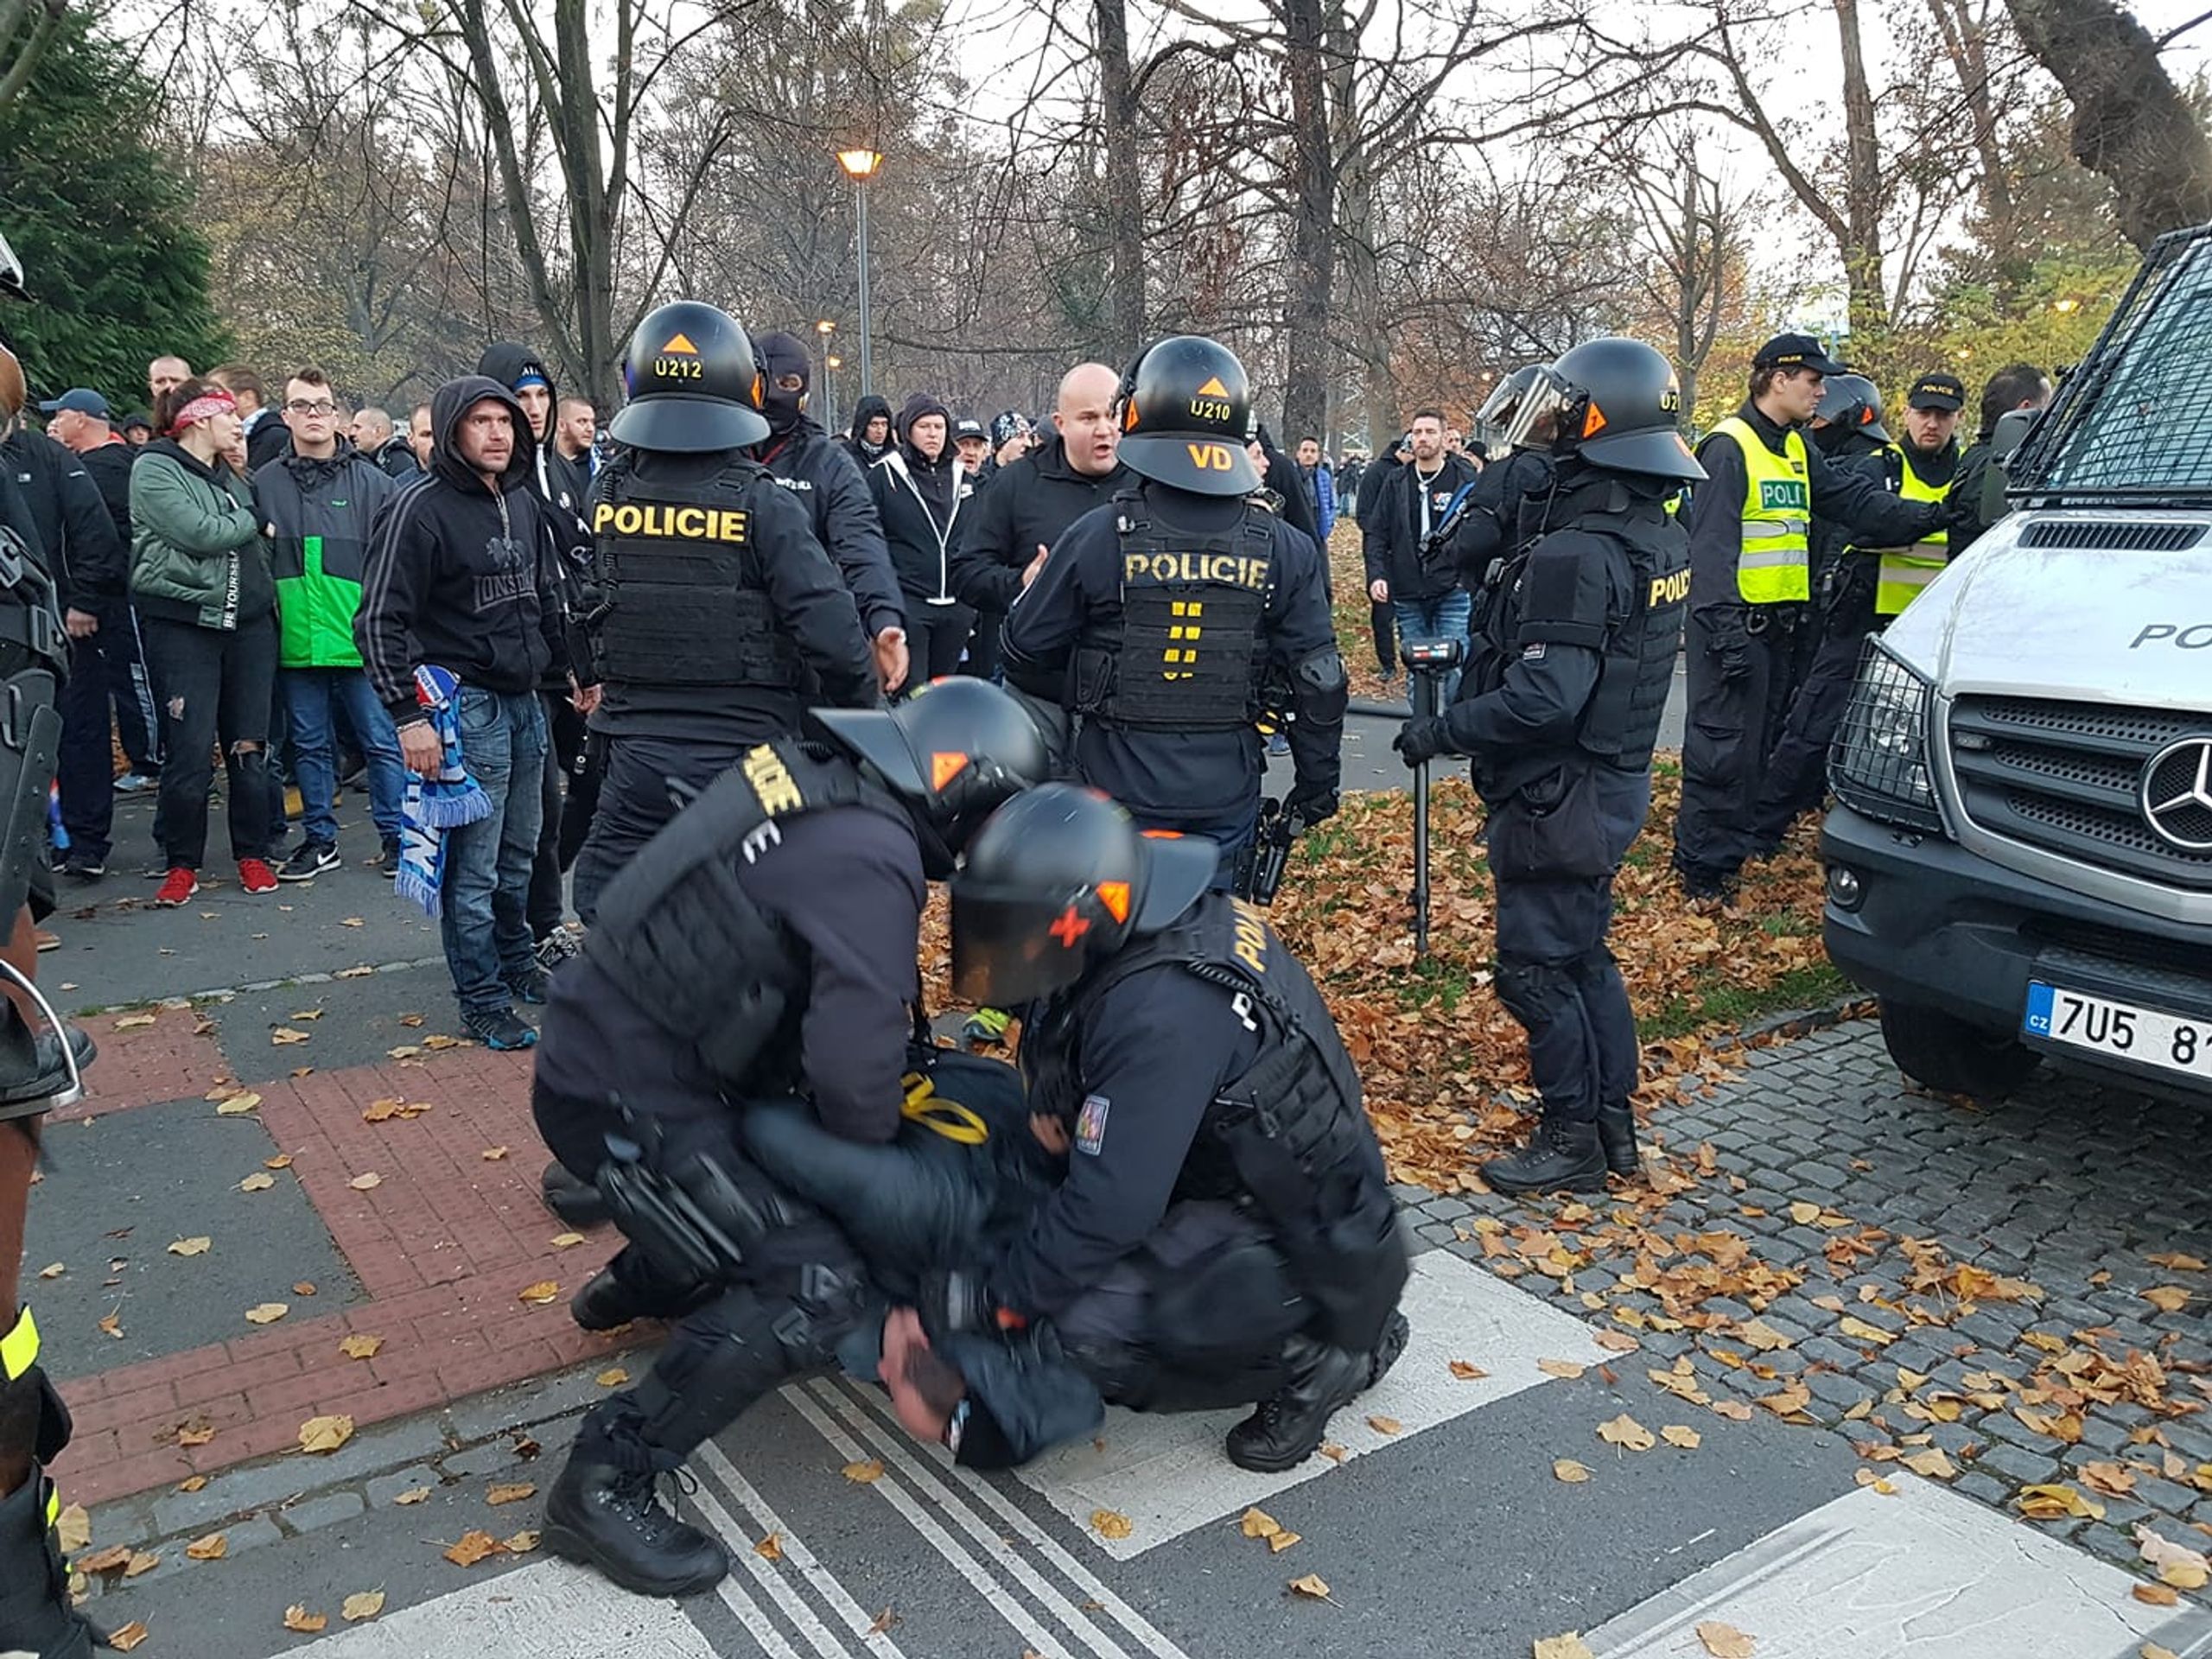 Policie v Opavě zatýká chuligány - GALERIE: Policejní manévry při derby mezi Opavou a Baníkem (3/5)